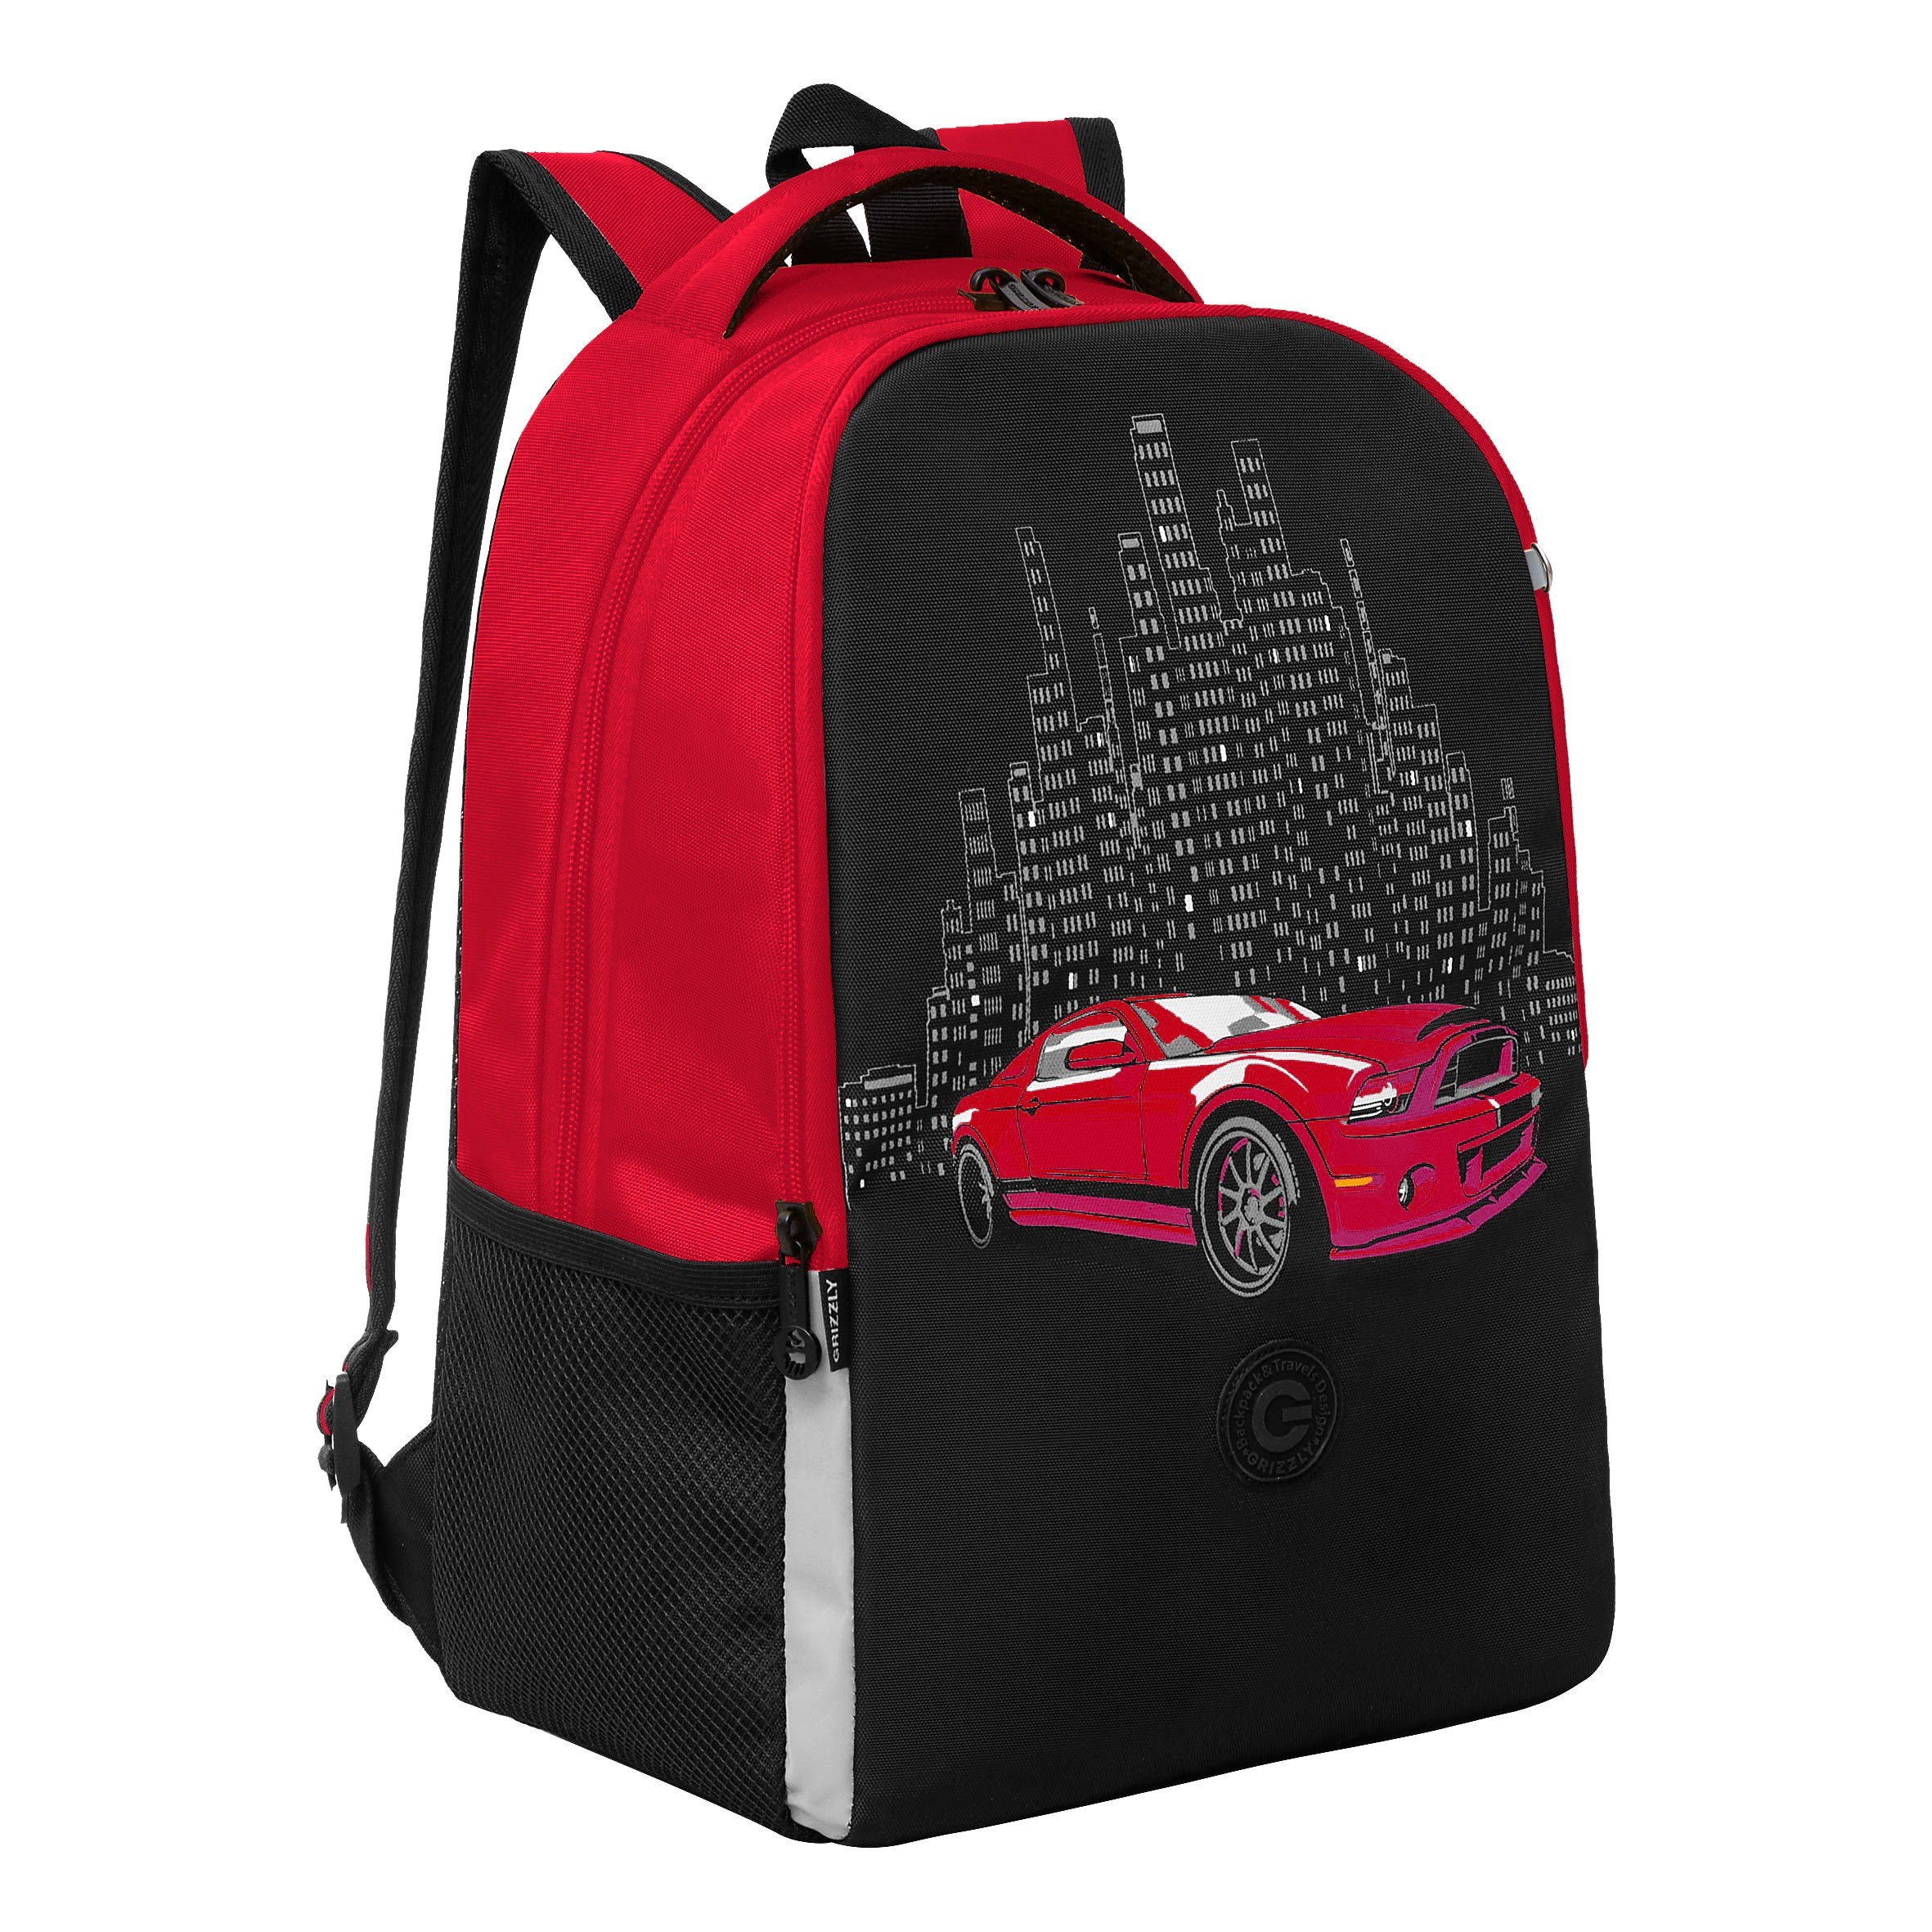 Рюкзак школьный GRIZZLY легкий с жесткой спинкой, 2 отделения RB-451-8/2 черный, красный рюкзак школьный 42 см дино два отделения